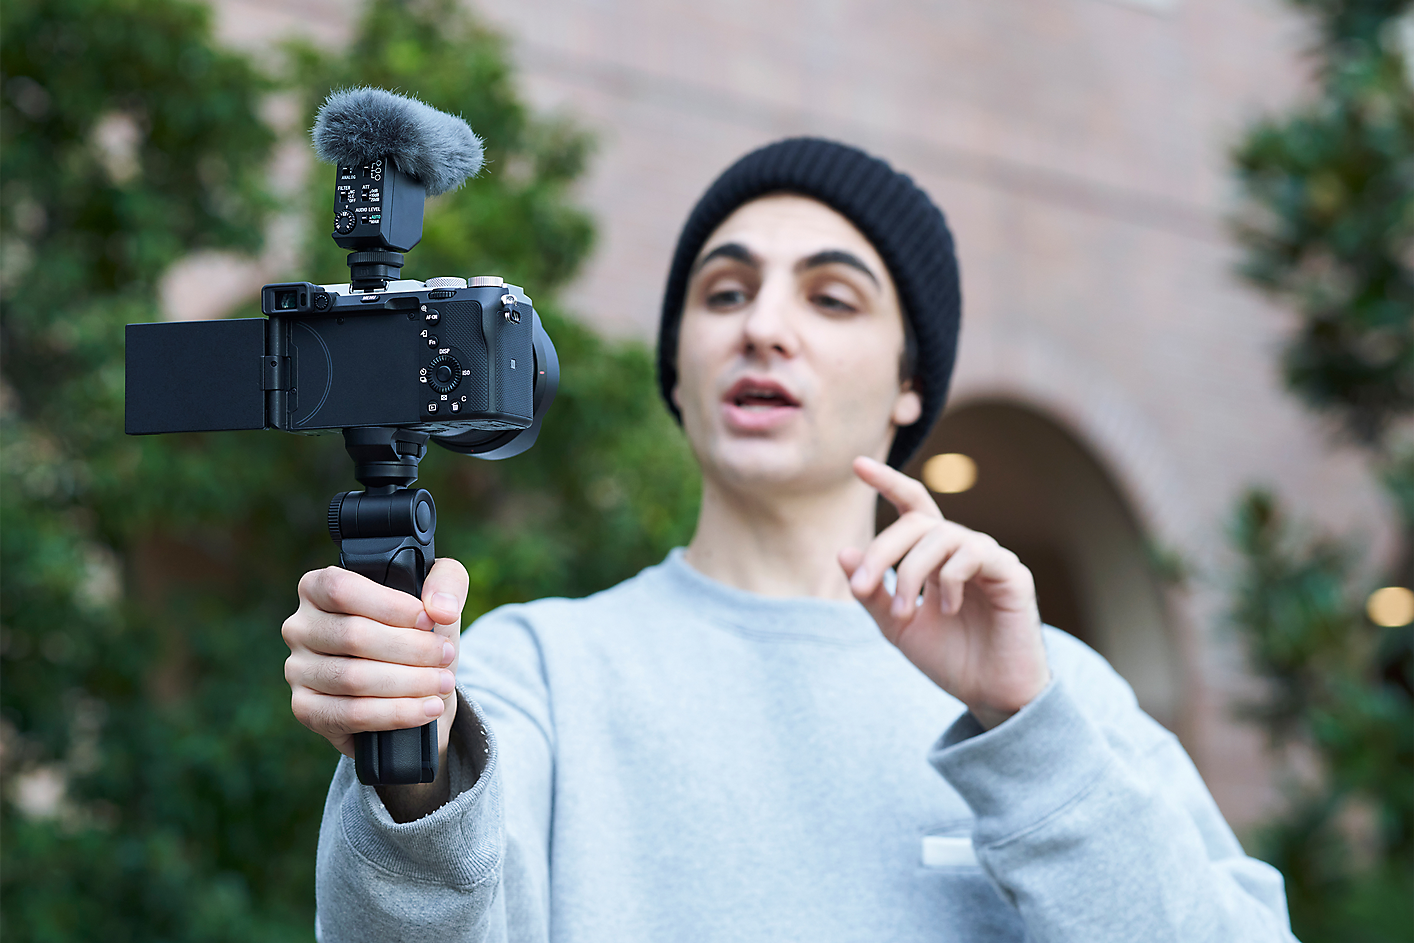 Obrázok osoby, ktorá fotí selfie v supersmerovom režime s mikrofónom ECM-B10 pripojeným ku kamere.